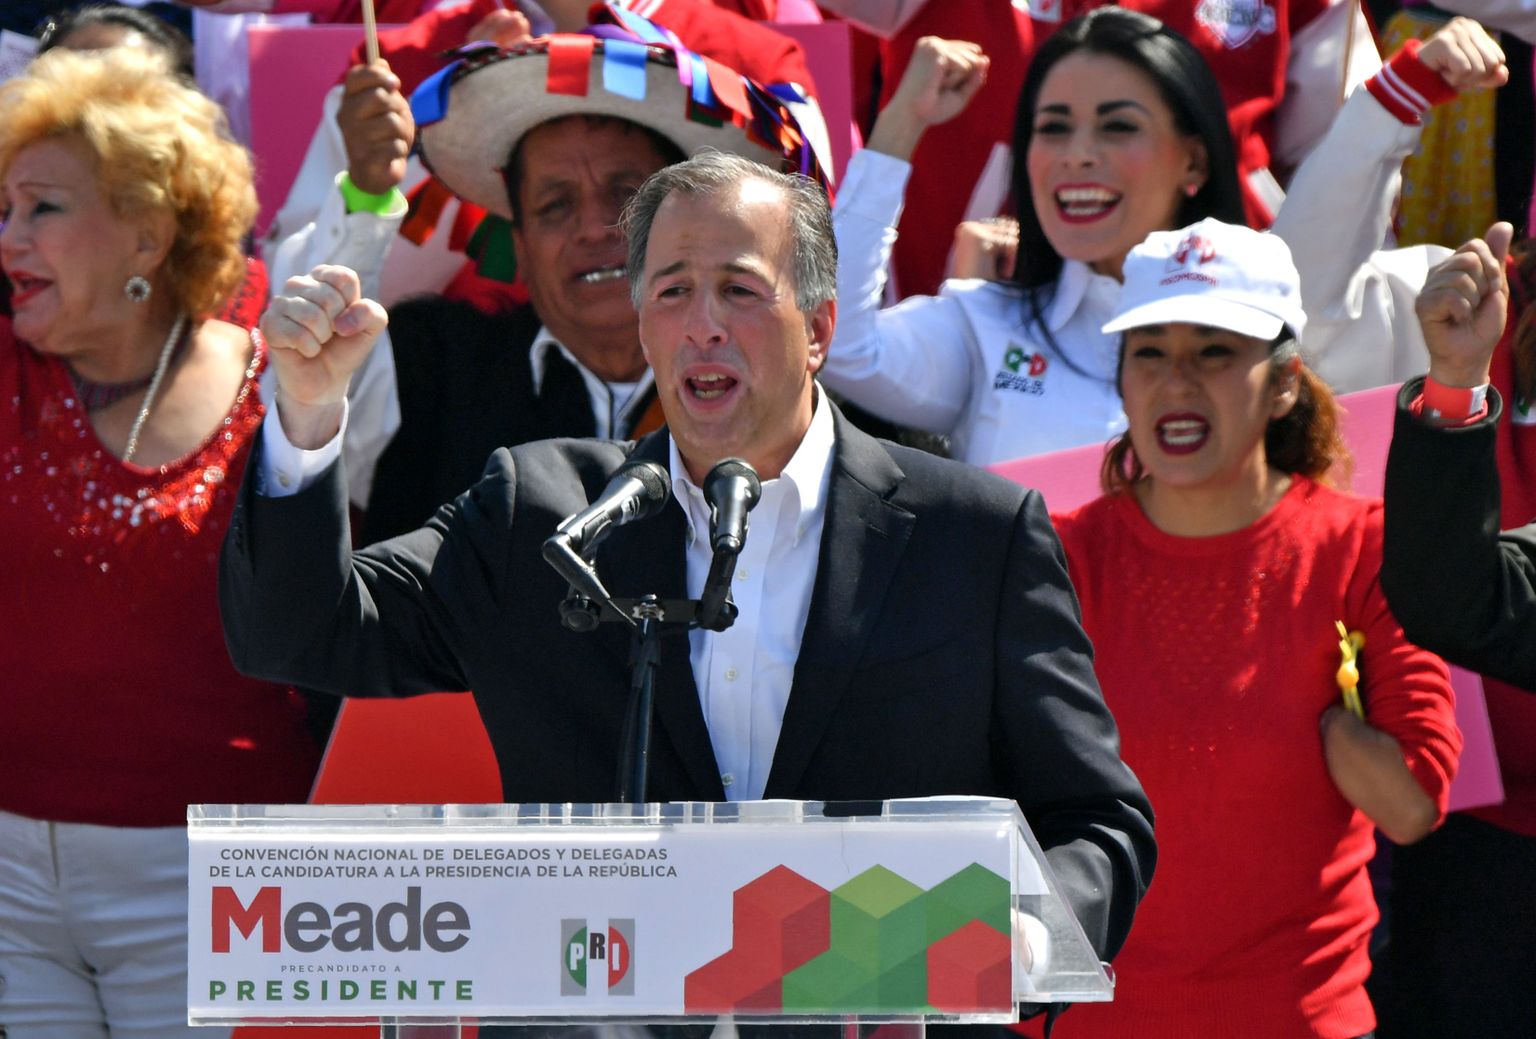 Mehhiko endine rahandusminister Jose Antonio Meade nõustus olema valitseva Institutsioonilise Revolutsioonipartei (PRI) presidendikandidaat ning pidas esimese ametliku kampaaniakõne.